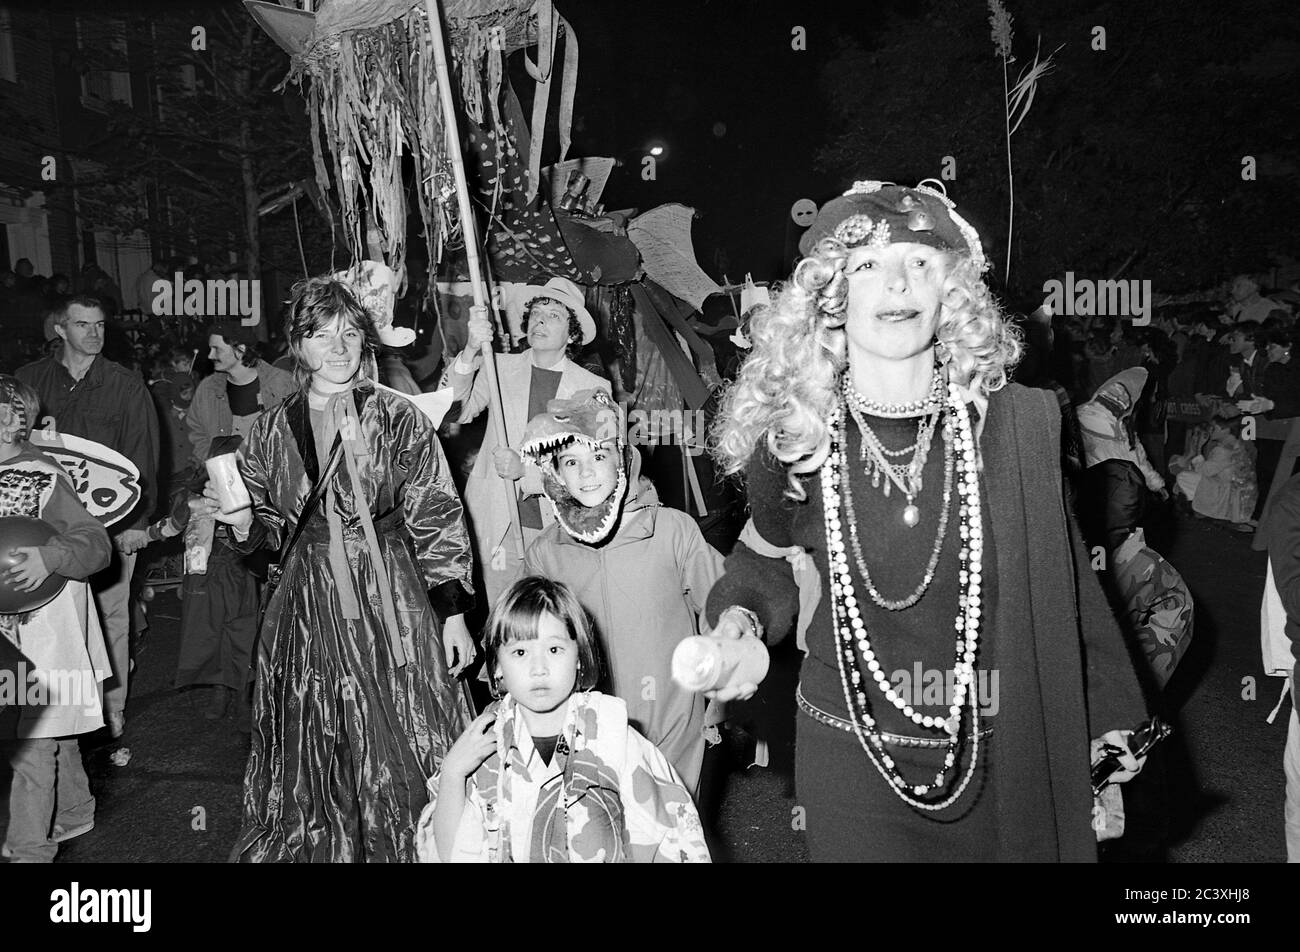 Famiglia al Greenwich Village Halloween Parade in Costums, New York City, USA negli anni '80 fotografato con film in bianco e nero di notte. Foto Stock